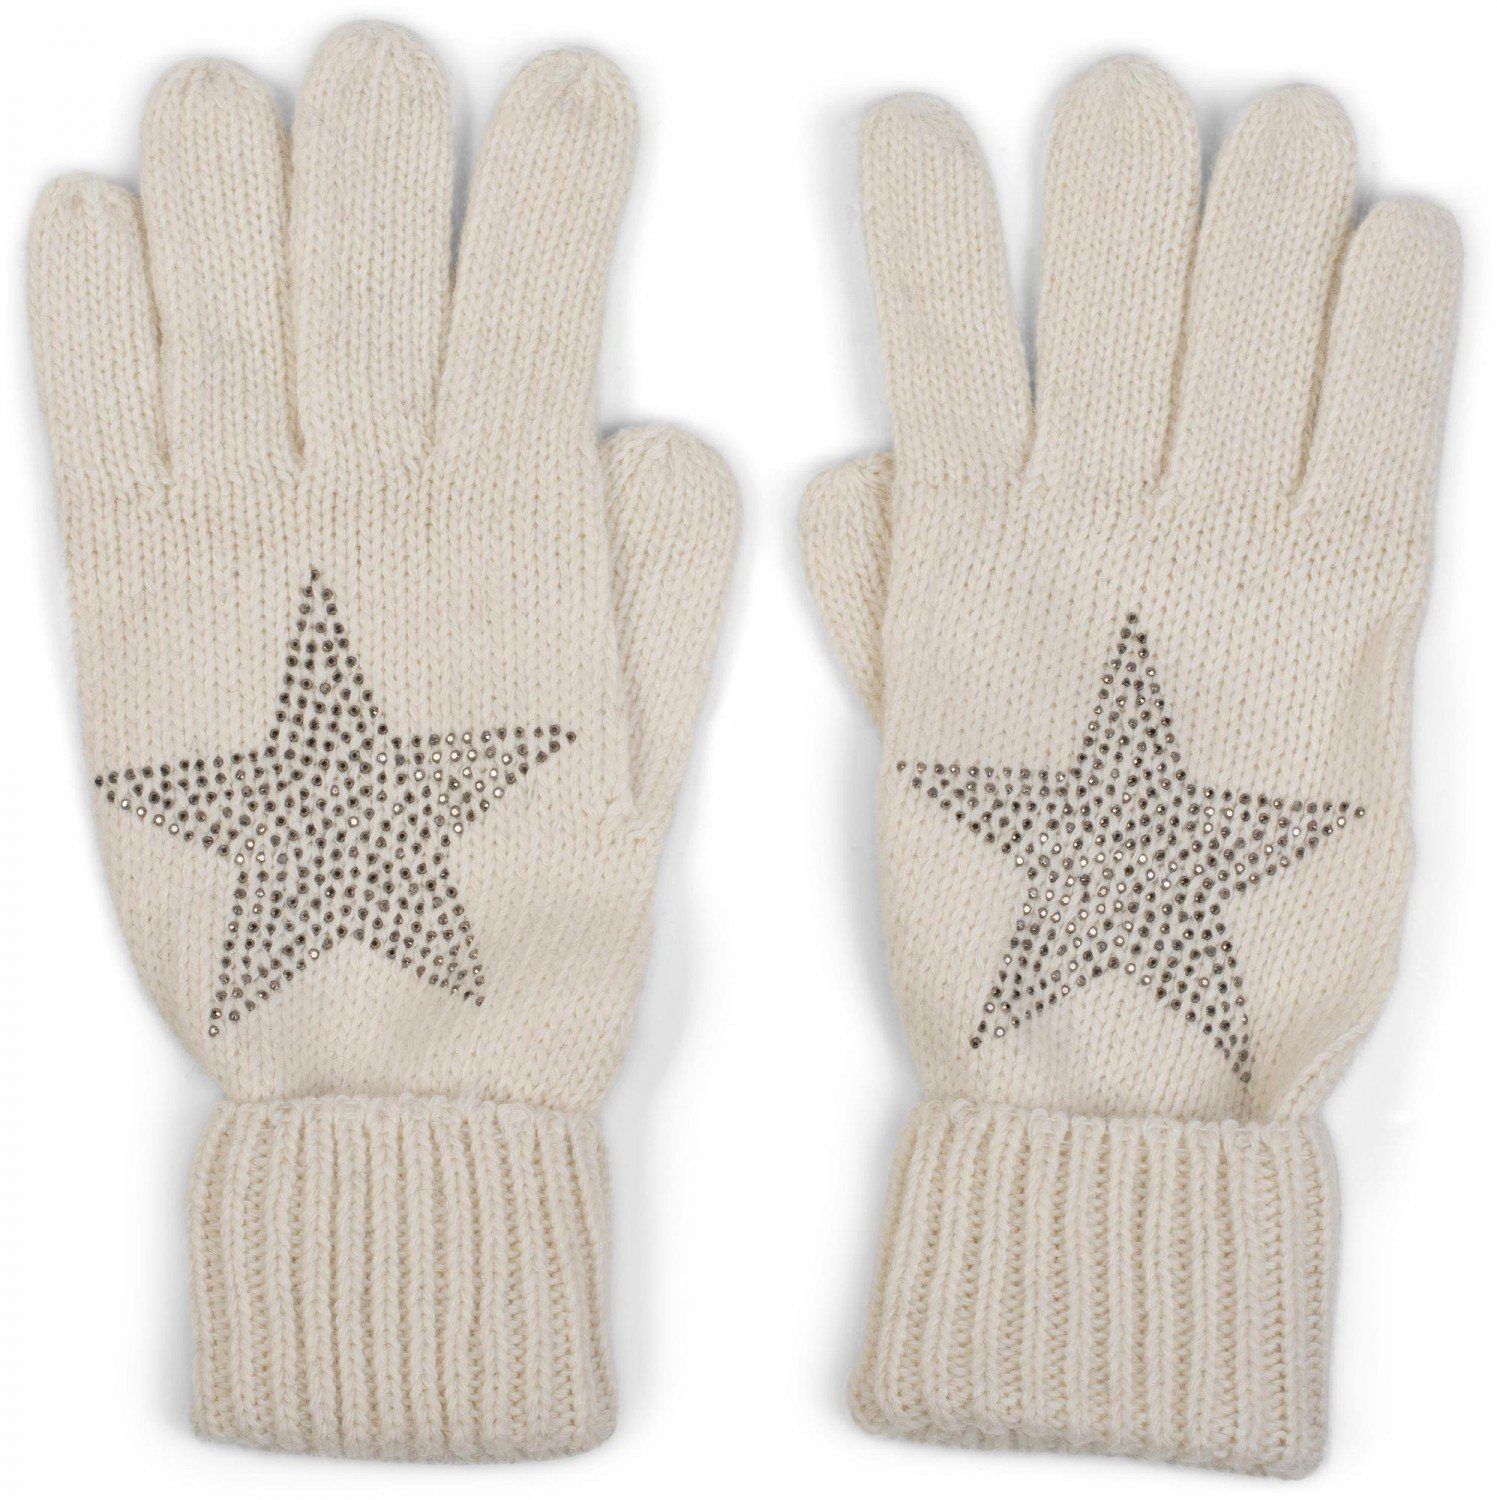 styleBREAKER Strickhandschuhe Strick Handschuhe mit Strass Creme-Weiß Stern